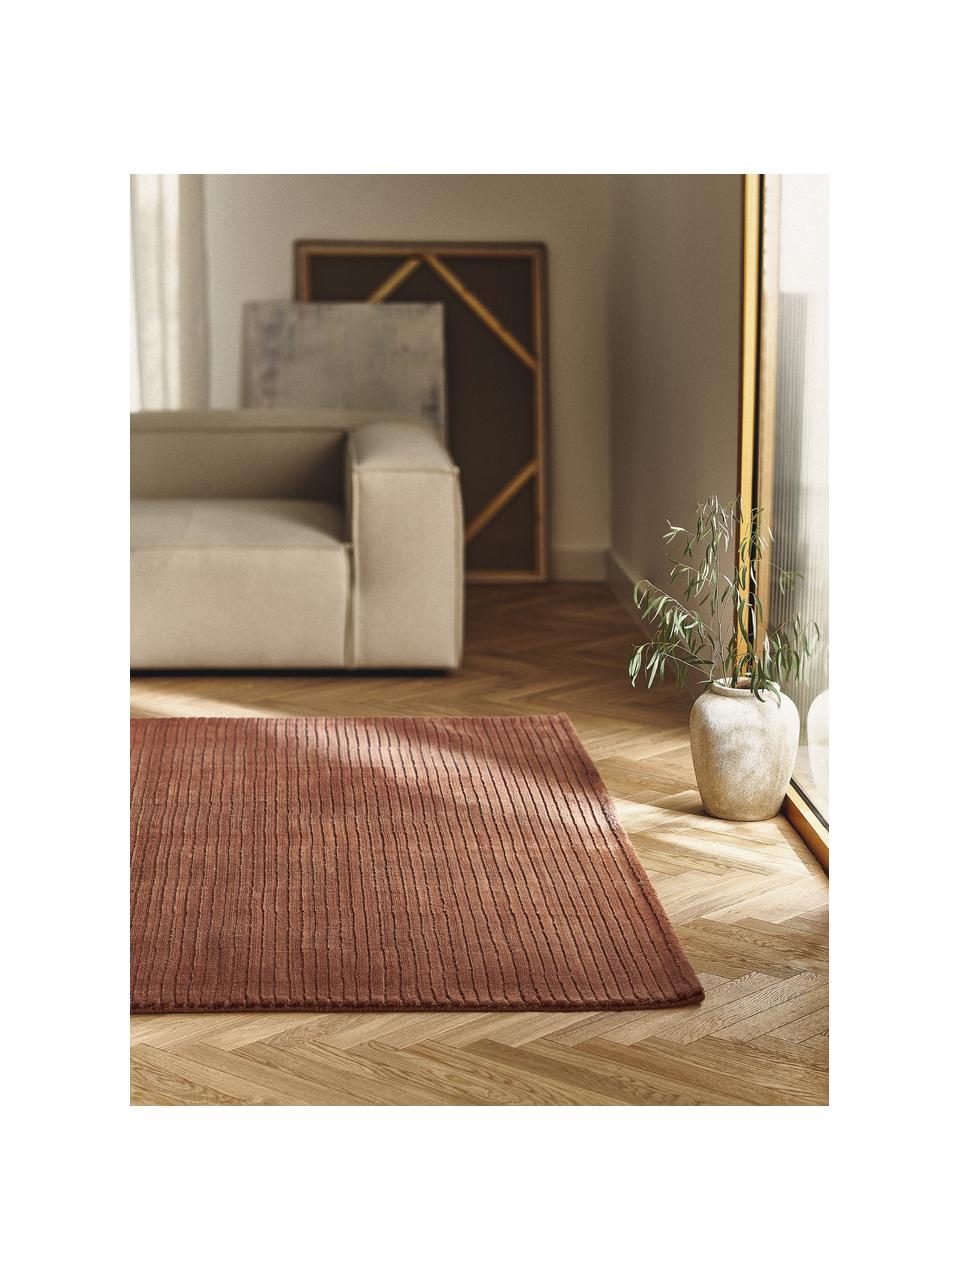 Nadýchaný koberec s vysokým vlasem a strukturovaným povrchem Wes, ručně tkaný, 100 % polyester, certifikace GRS, Terakotová, Š 160 cm, D 230 cm (velikost M)